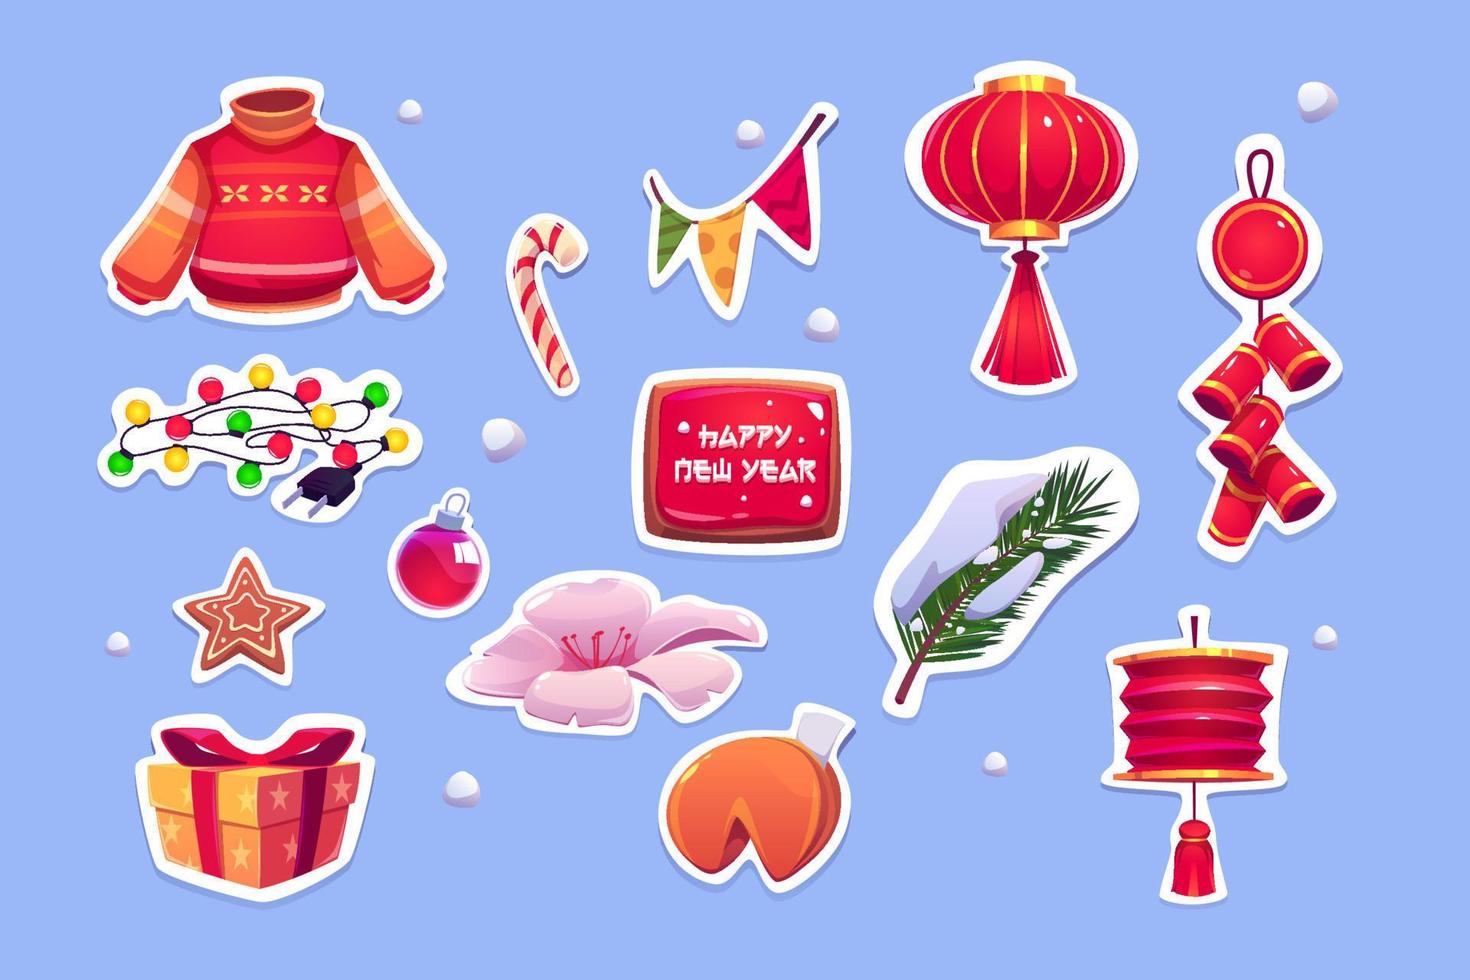 autocollants du nouvel an chinois avec lanterne rouge vecteur